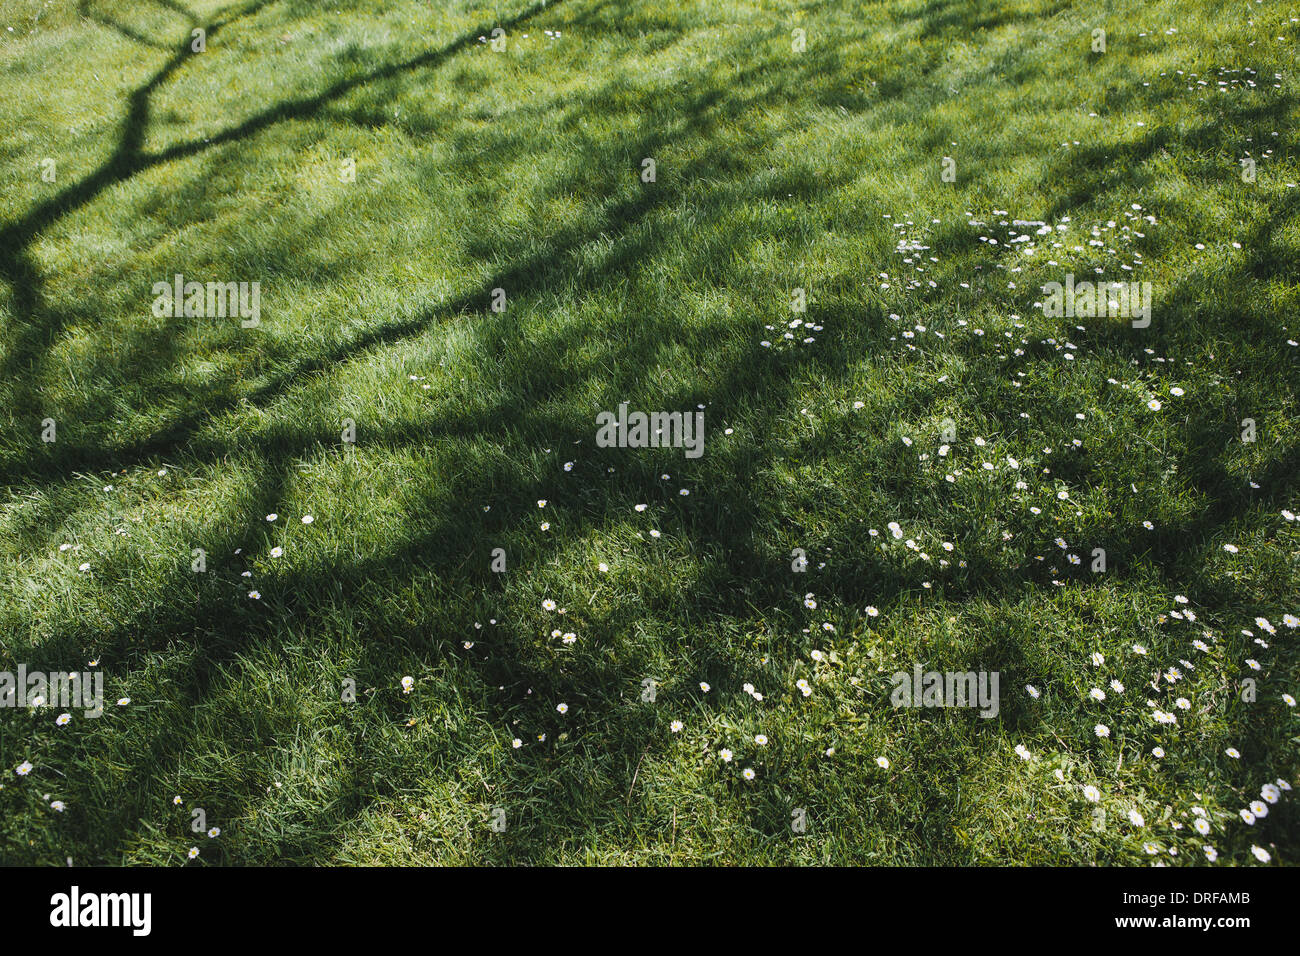 L'état de Washington, États-Unis d'herbe luxuriante pelouse de l'ombre fraîche Banque D'Images